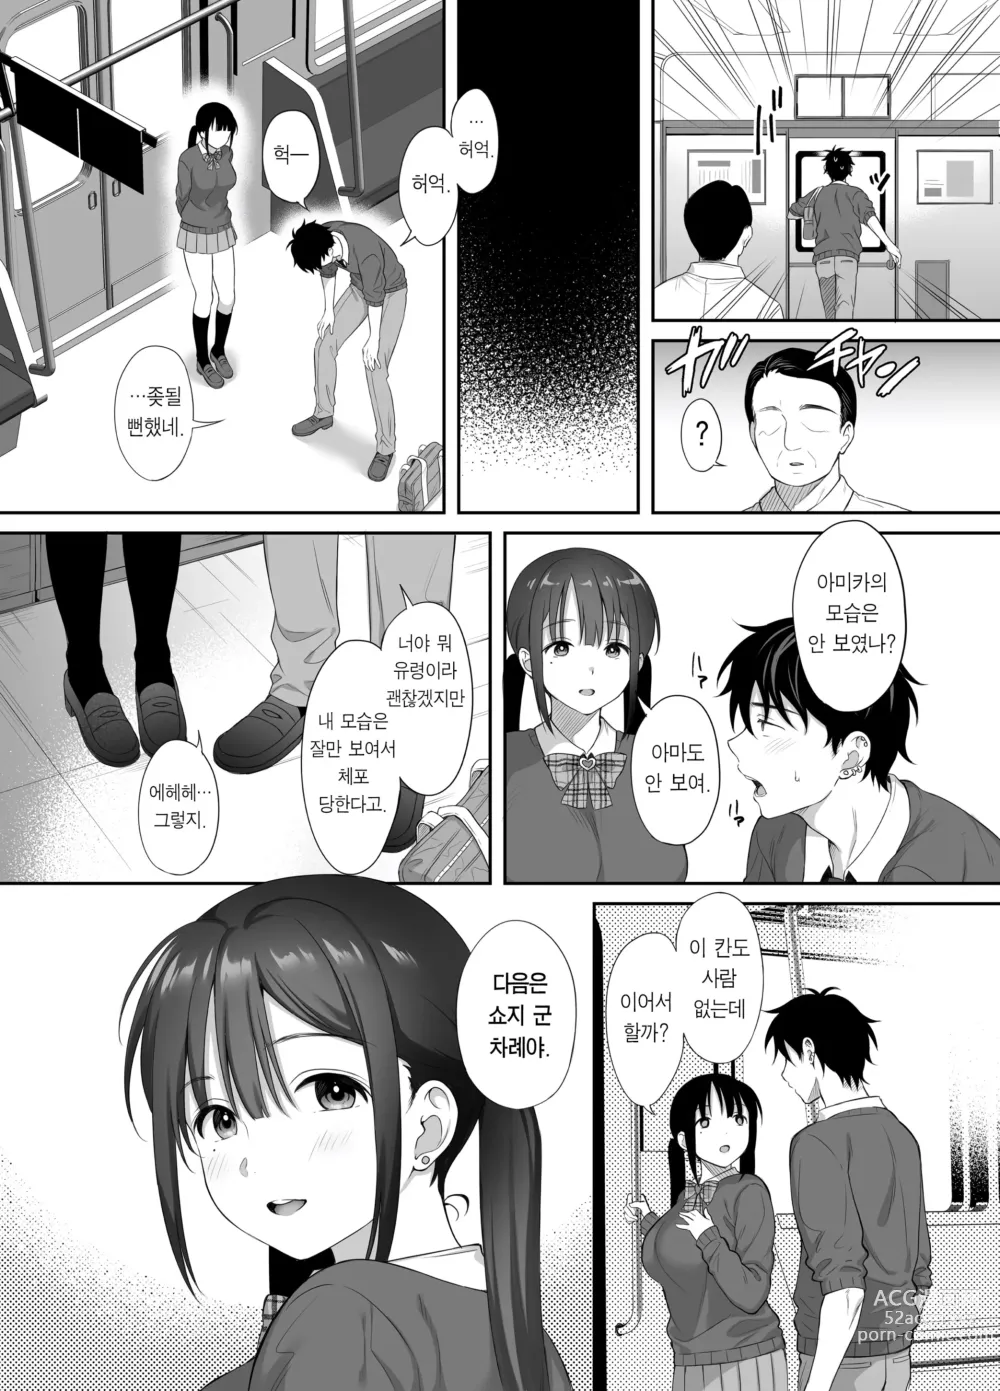 Page 32 of doujinshi 폐허에서 지뢰녀랑 밤새 질내사정 섹스한 이야기 2